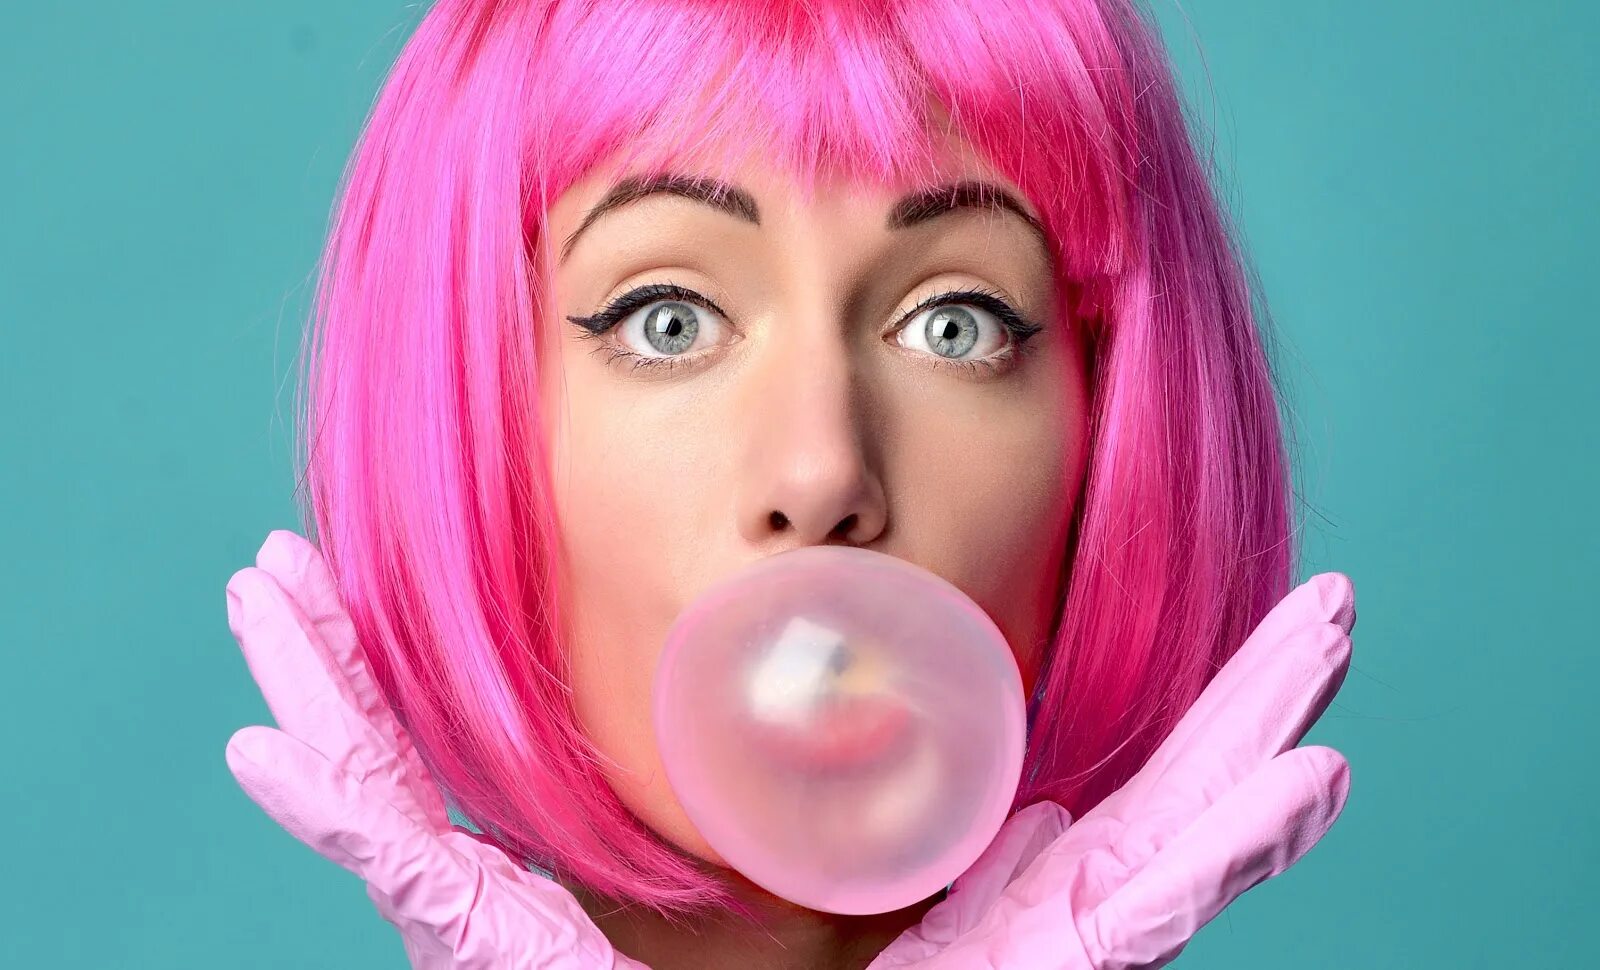 Включи новое видео bubble. Бабл гам девушка. Bubble Gum жвачка. Девушка с жвачкой. Розовая жевательная резинка.